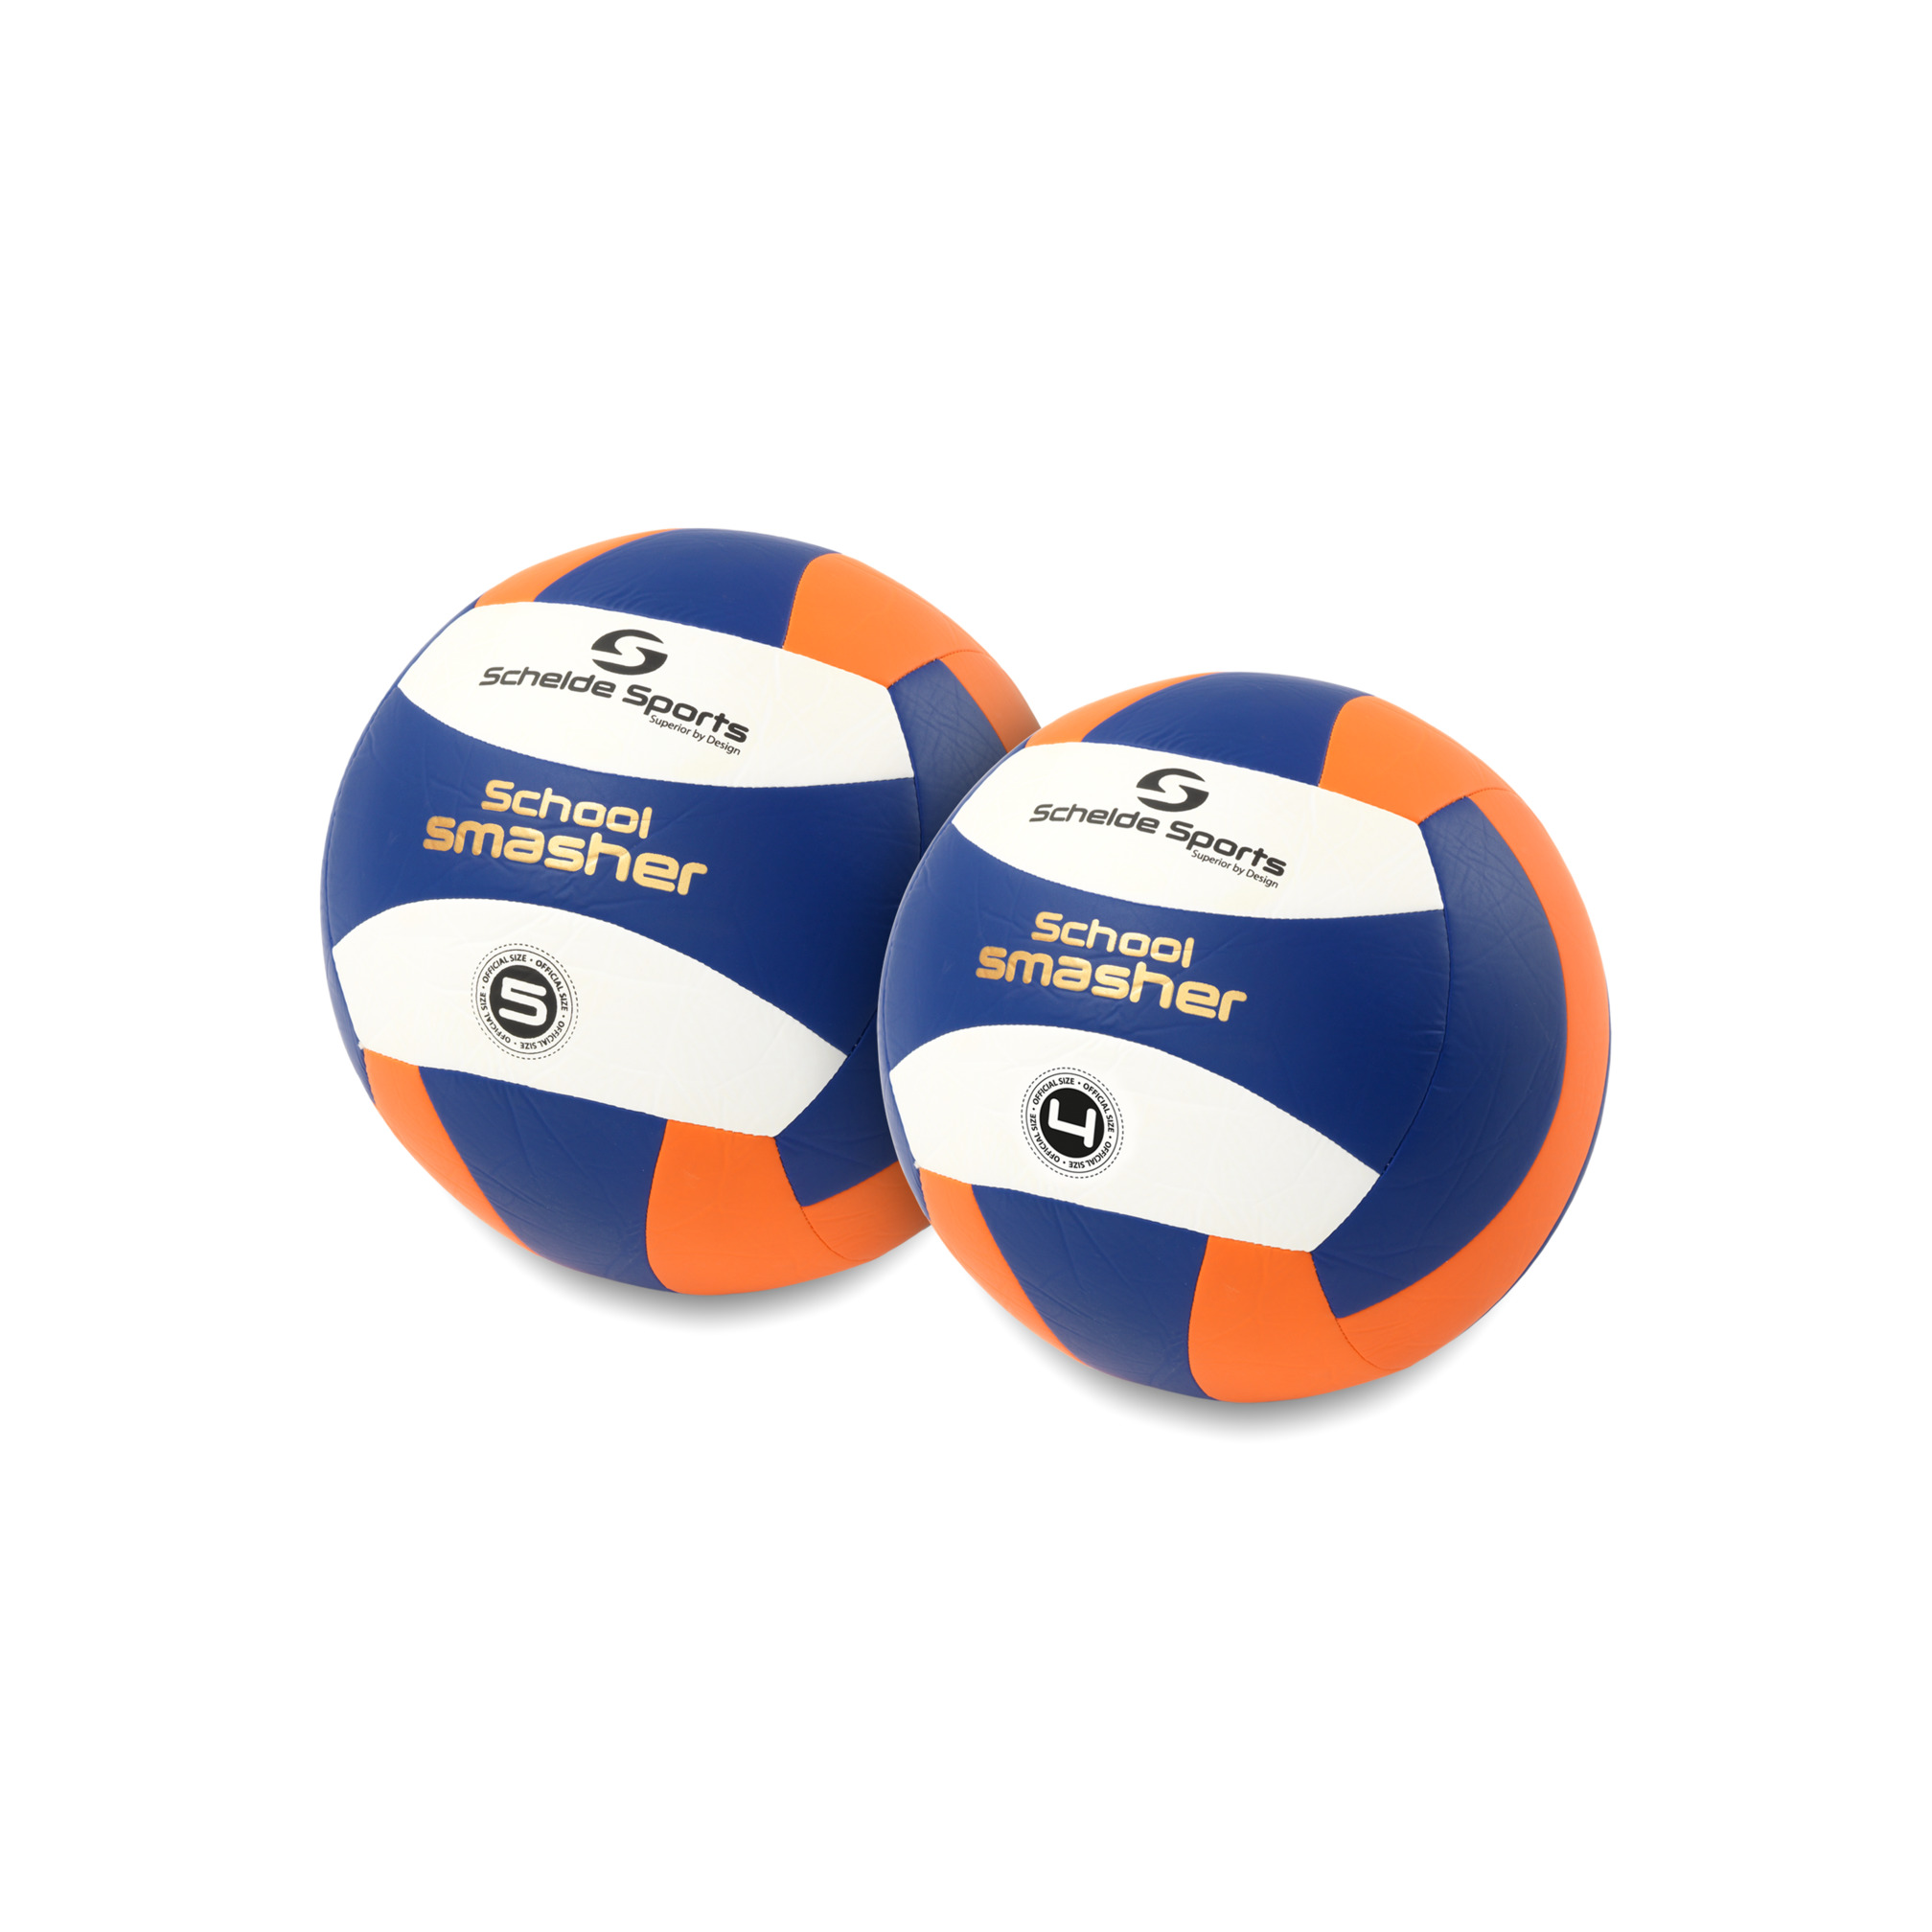 Schelde Sports Volleyball School Smasher, size 4